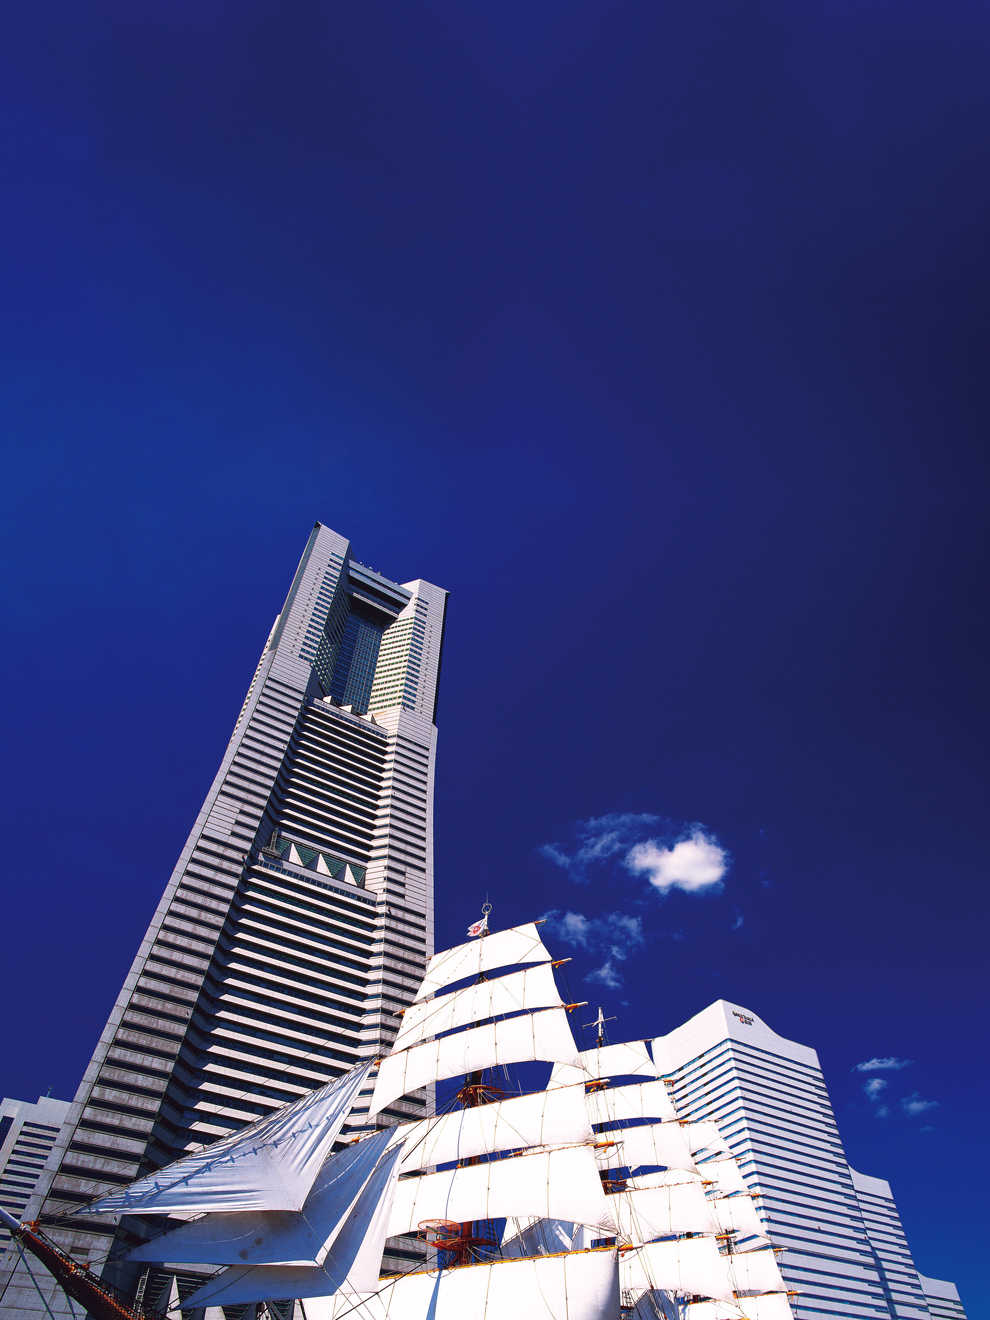 みなとみらいのシンボルとして圧倒的な存在感を放つ横浜ランドマークタワー。オフィス、ホテル、ショッピングモールなどを併設し、多くの人が訪れる複合施設として魅力的な街を形成している。